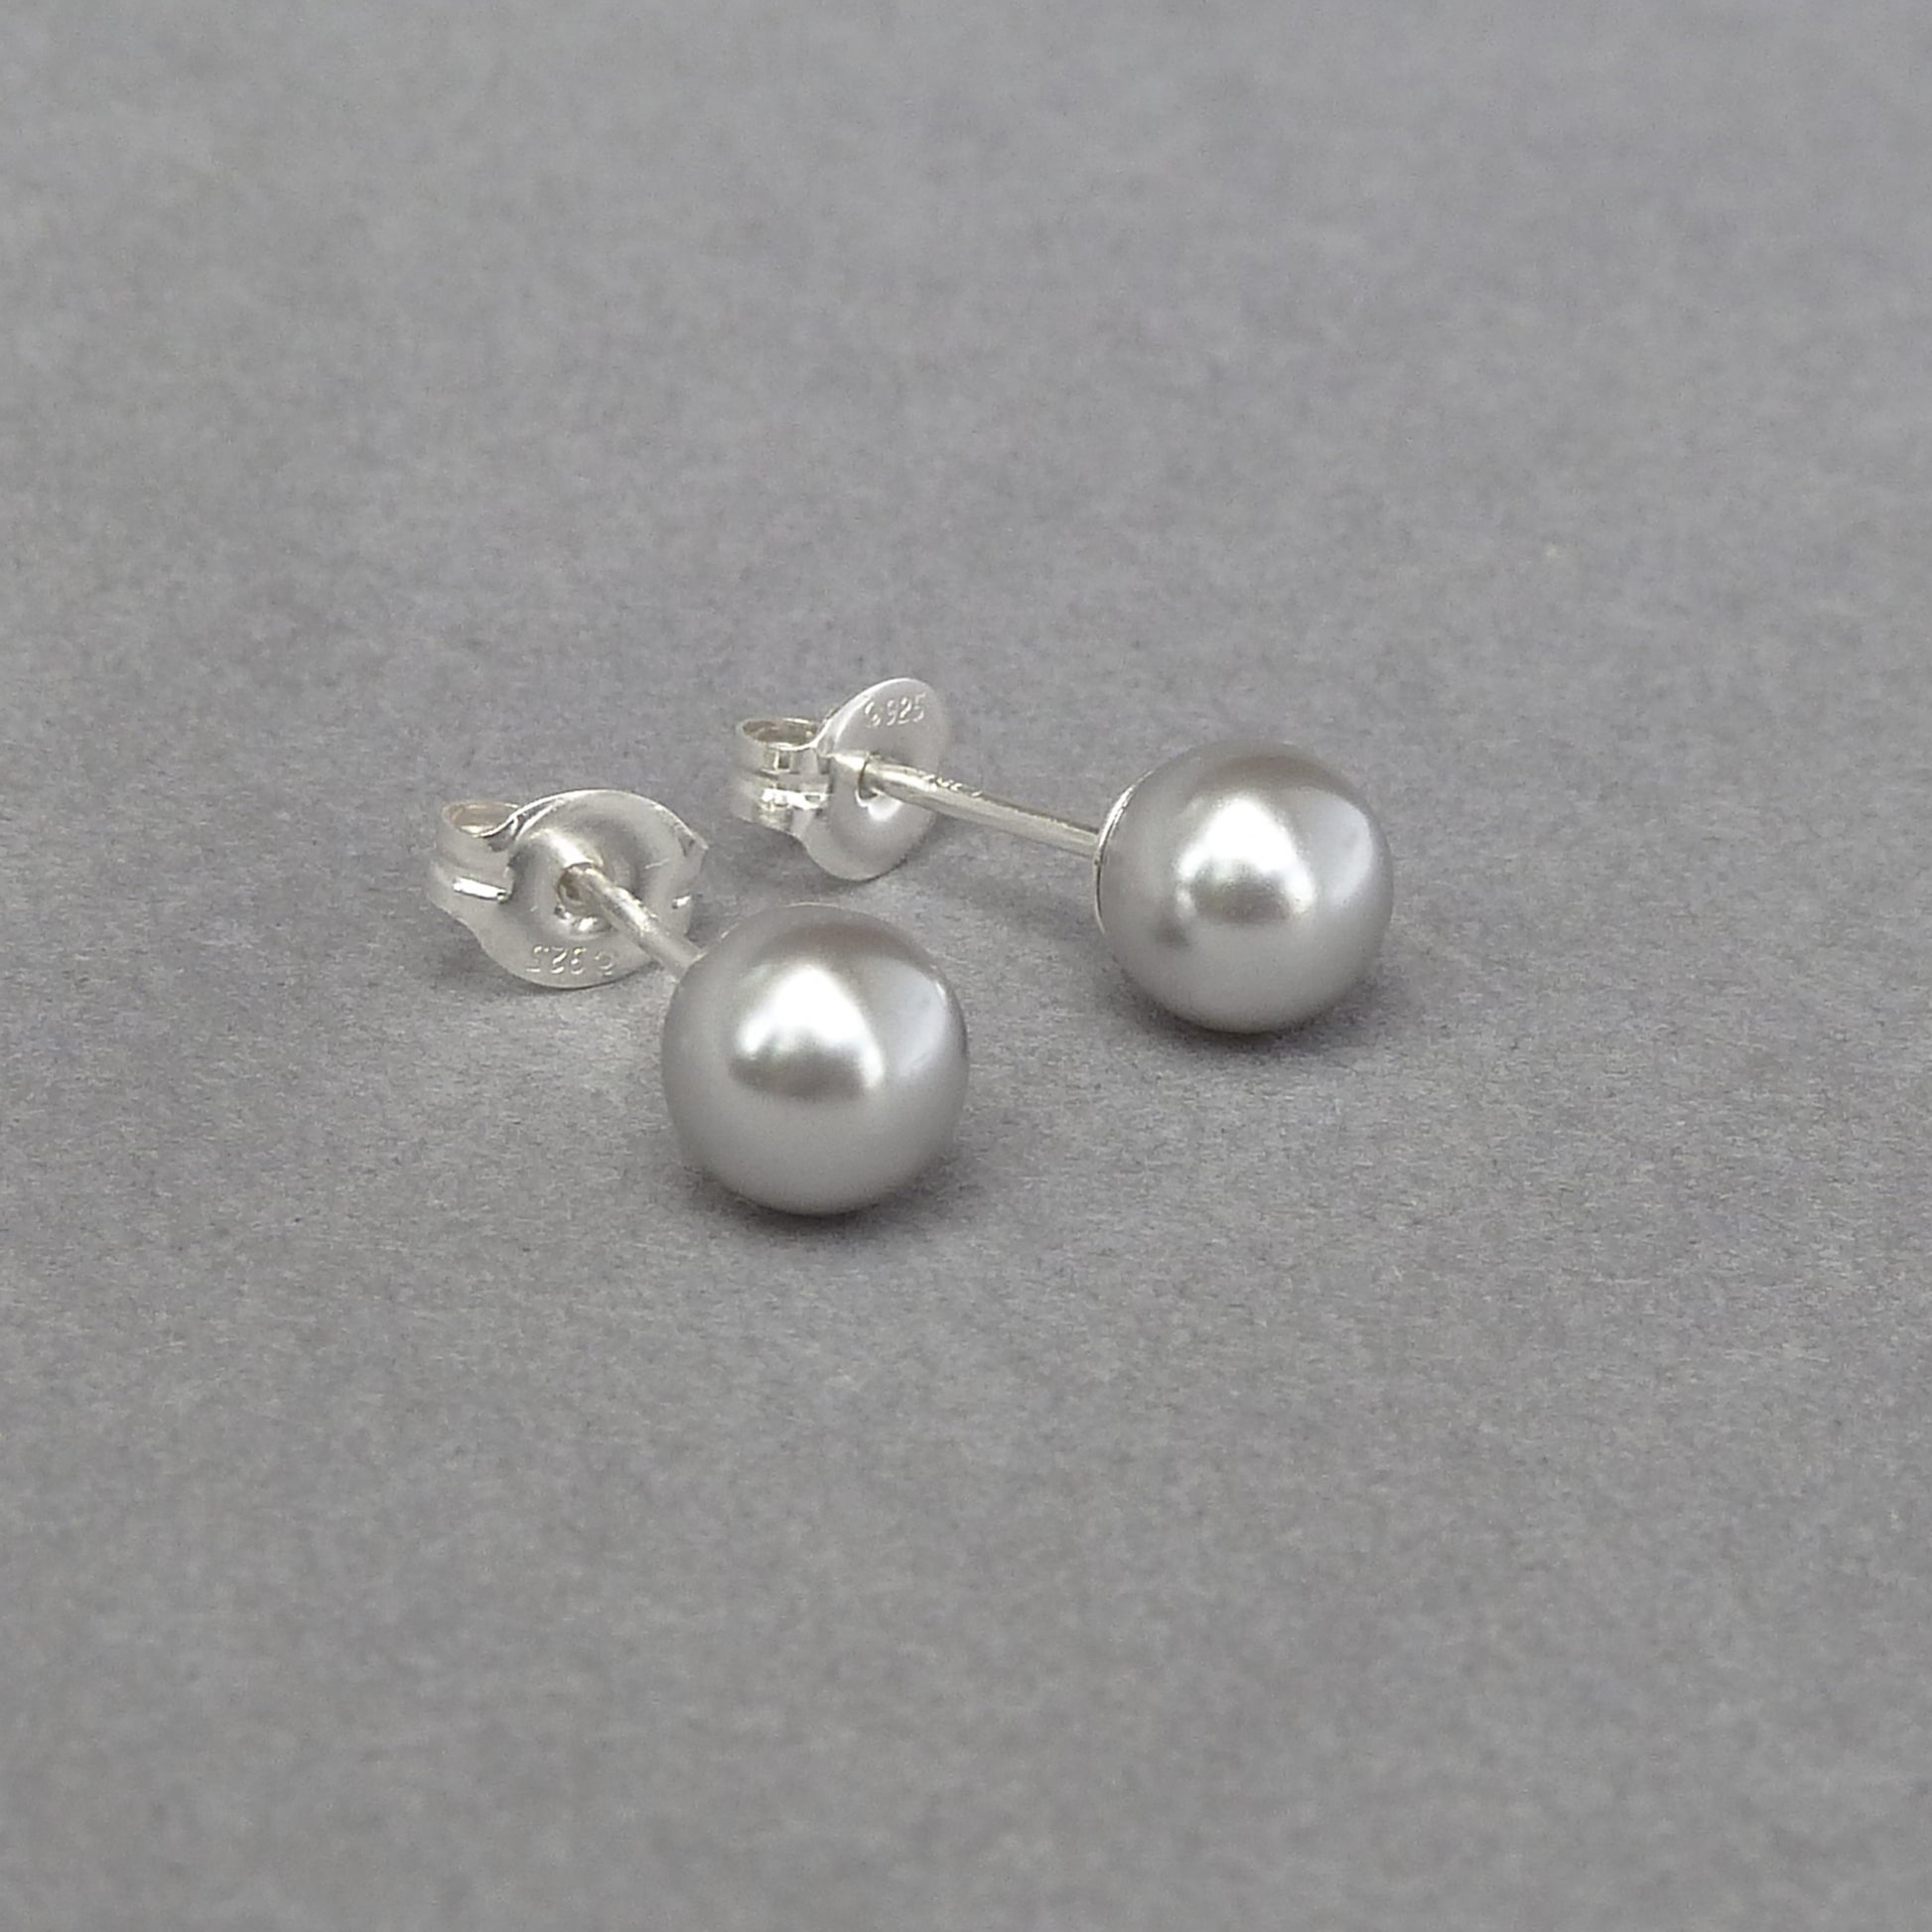 6mm light grey pearl stud earrings